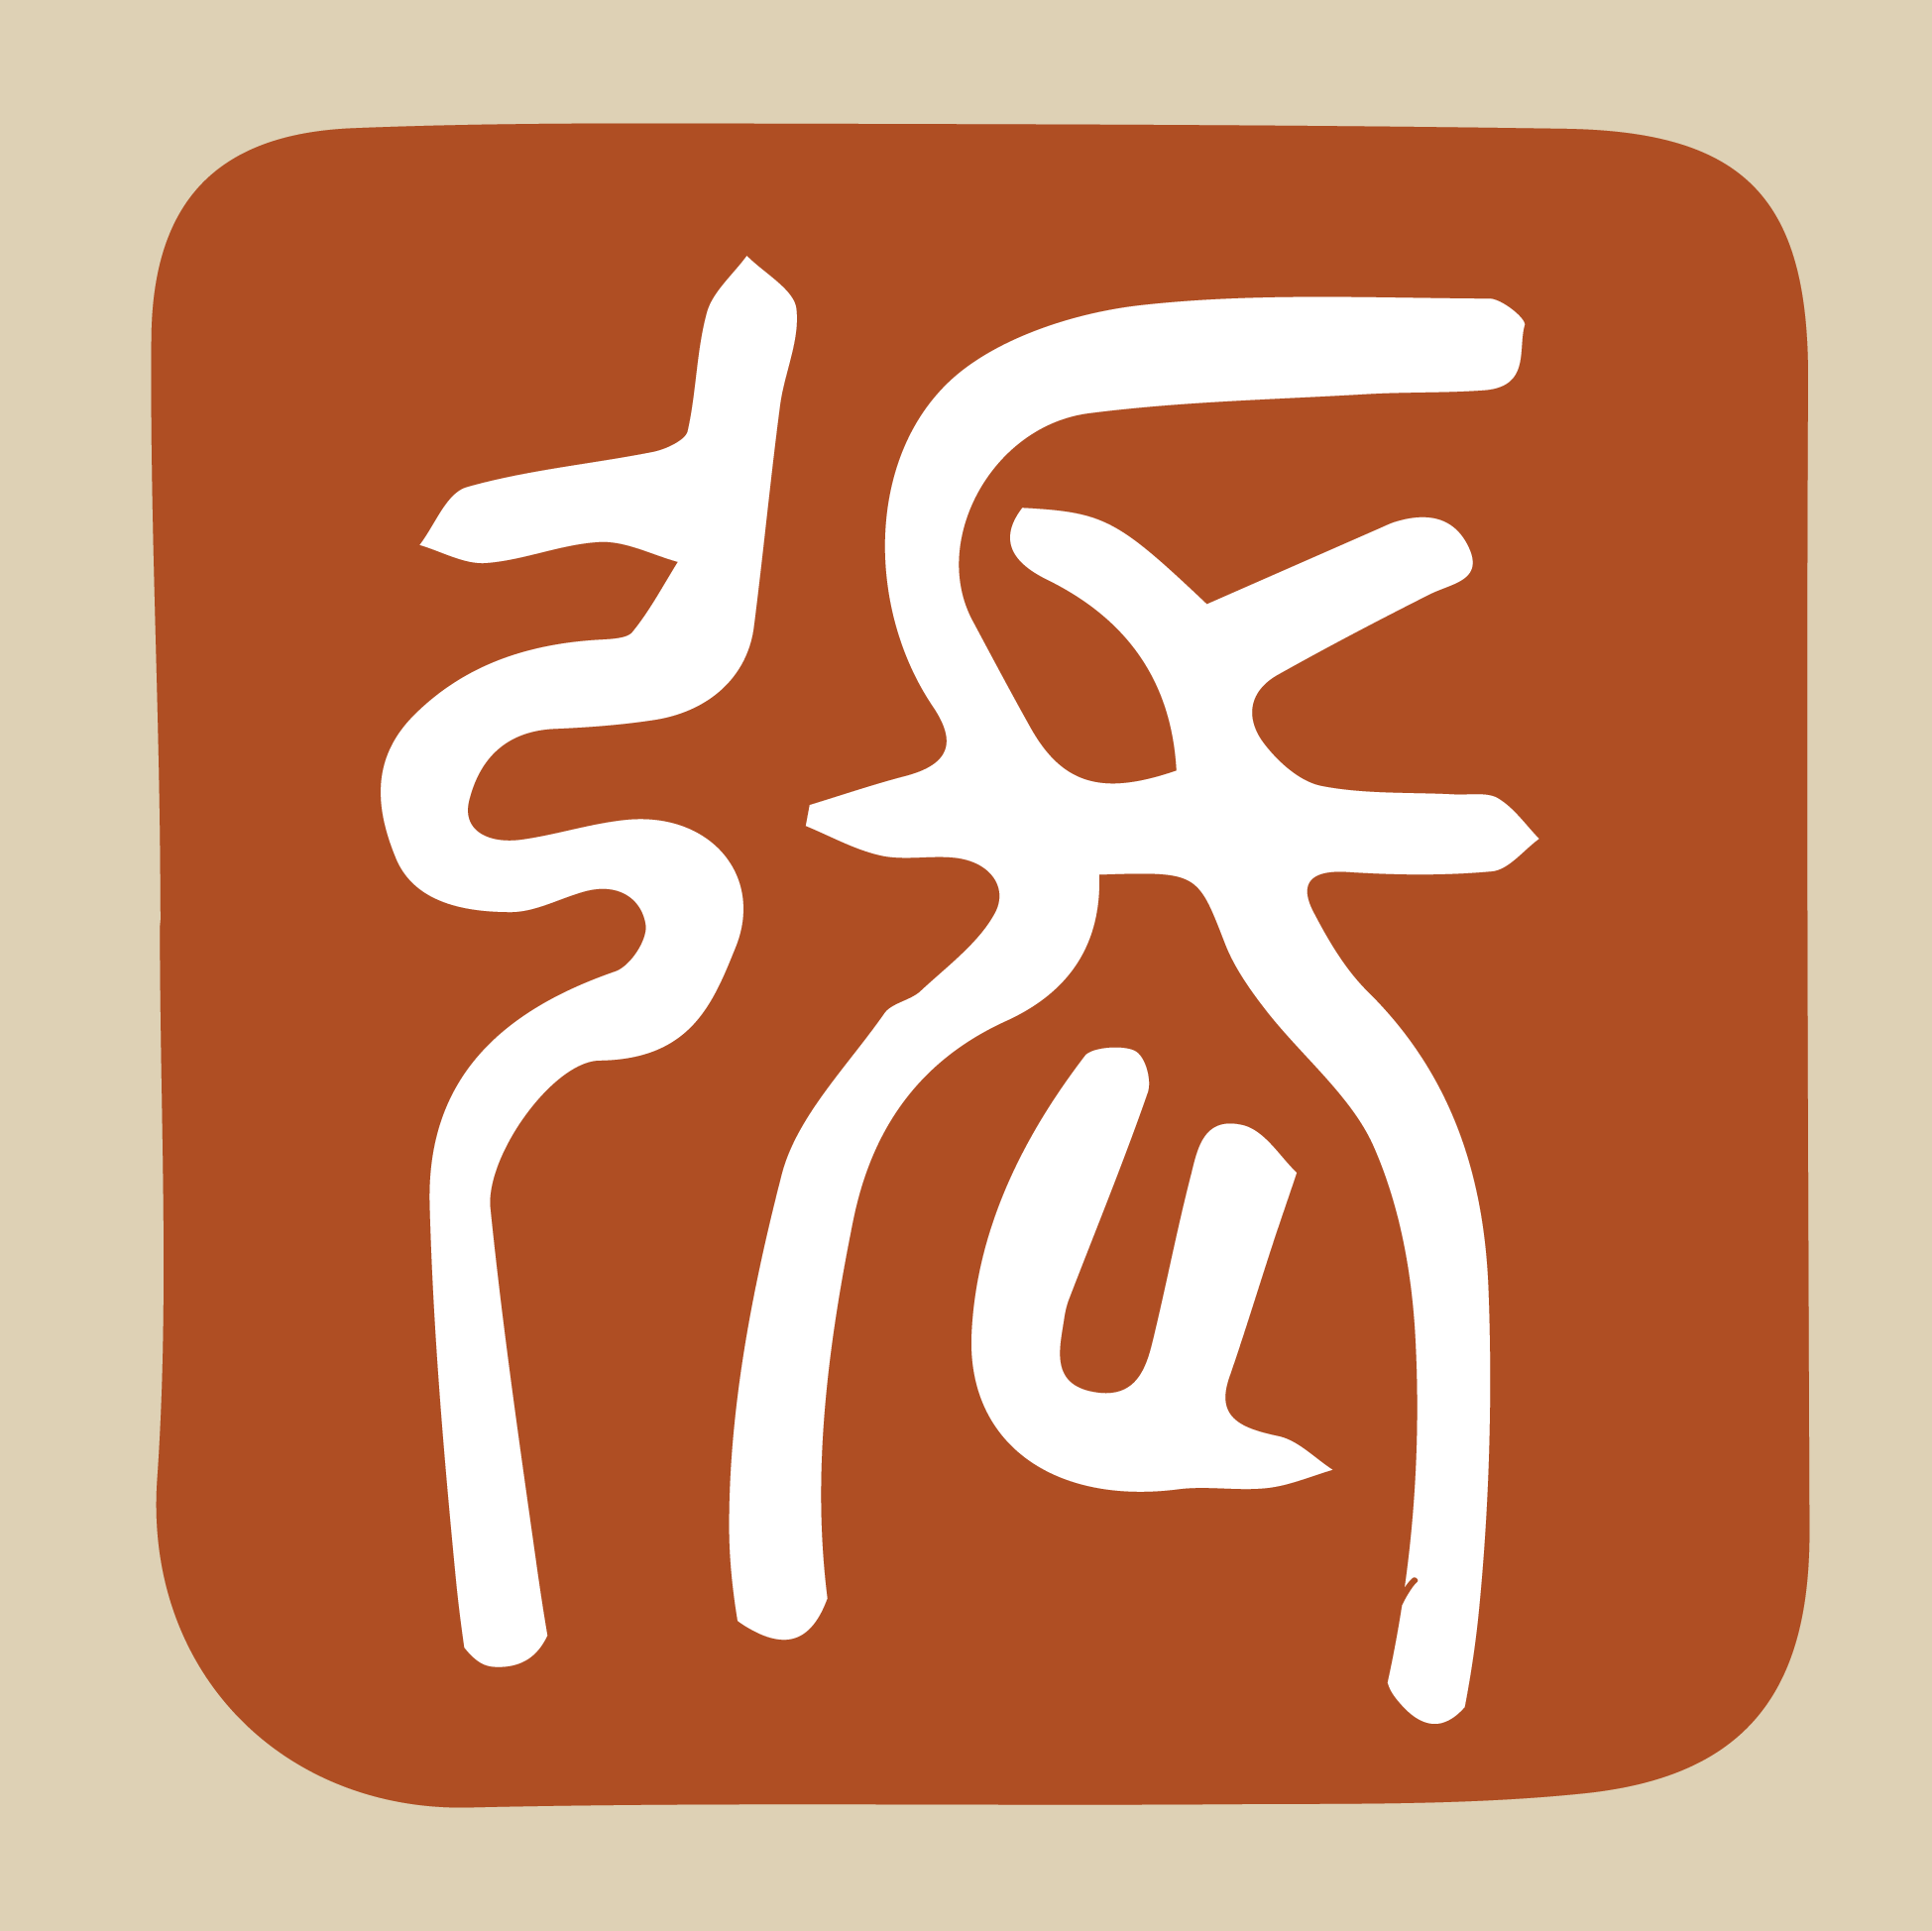 Apellido Zhang (張) en escritura arcáica. Ilustración de javierperez.info